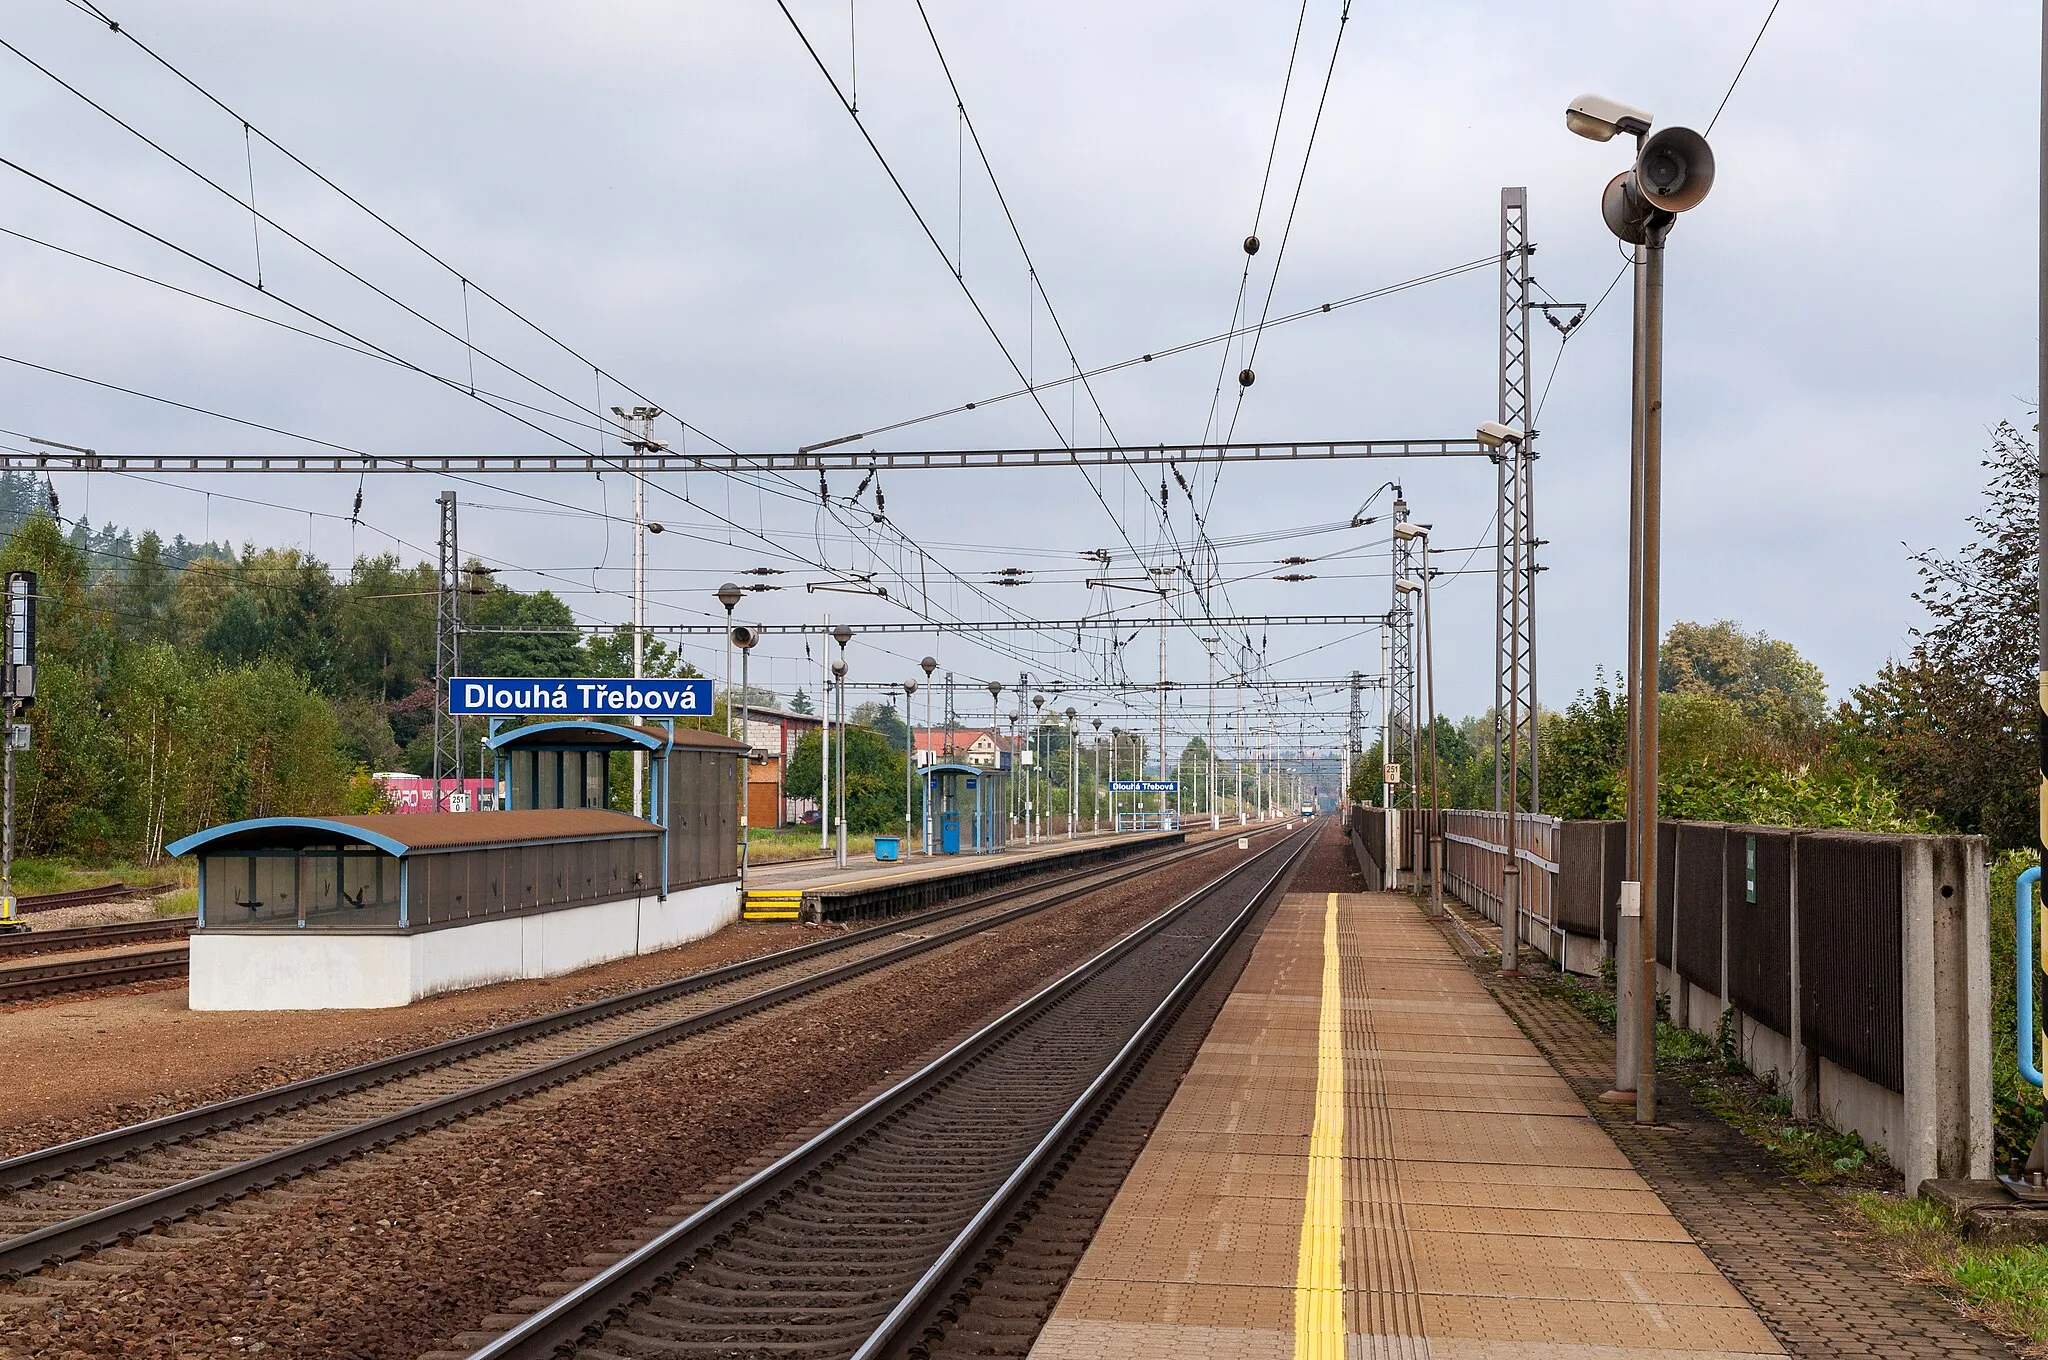 Photo showing: railway station in Dlouhá Třebová, Czech Republic